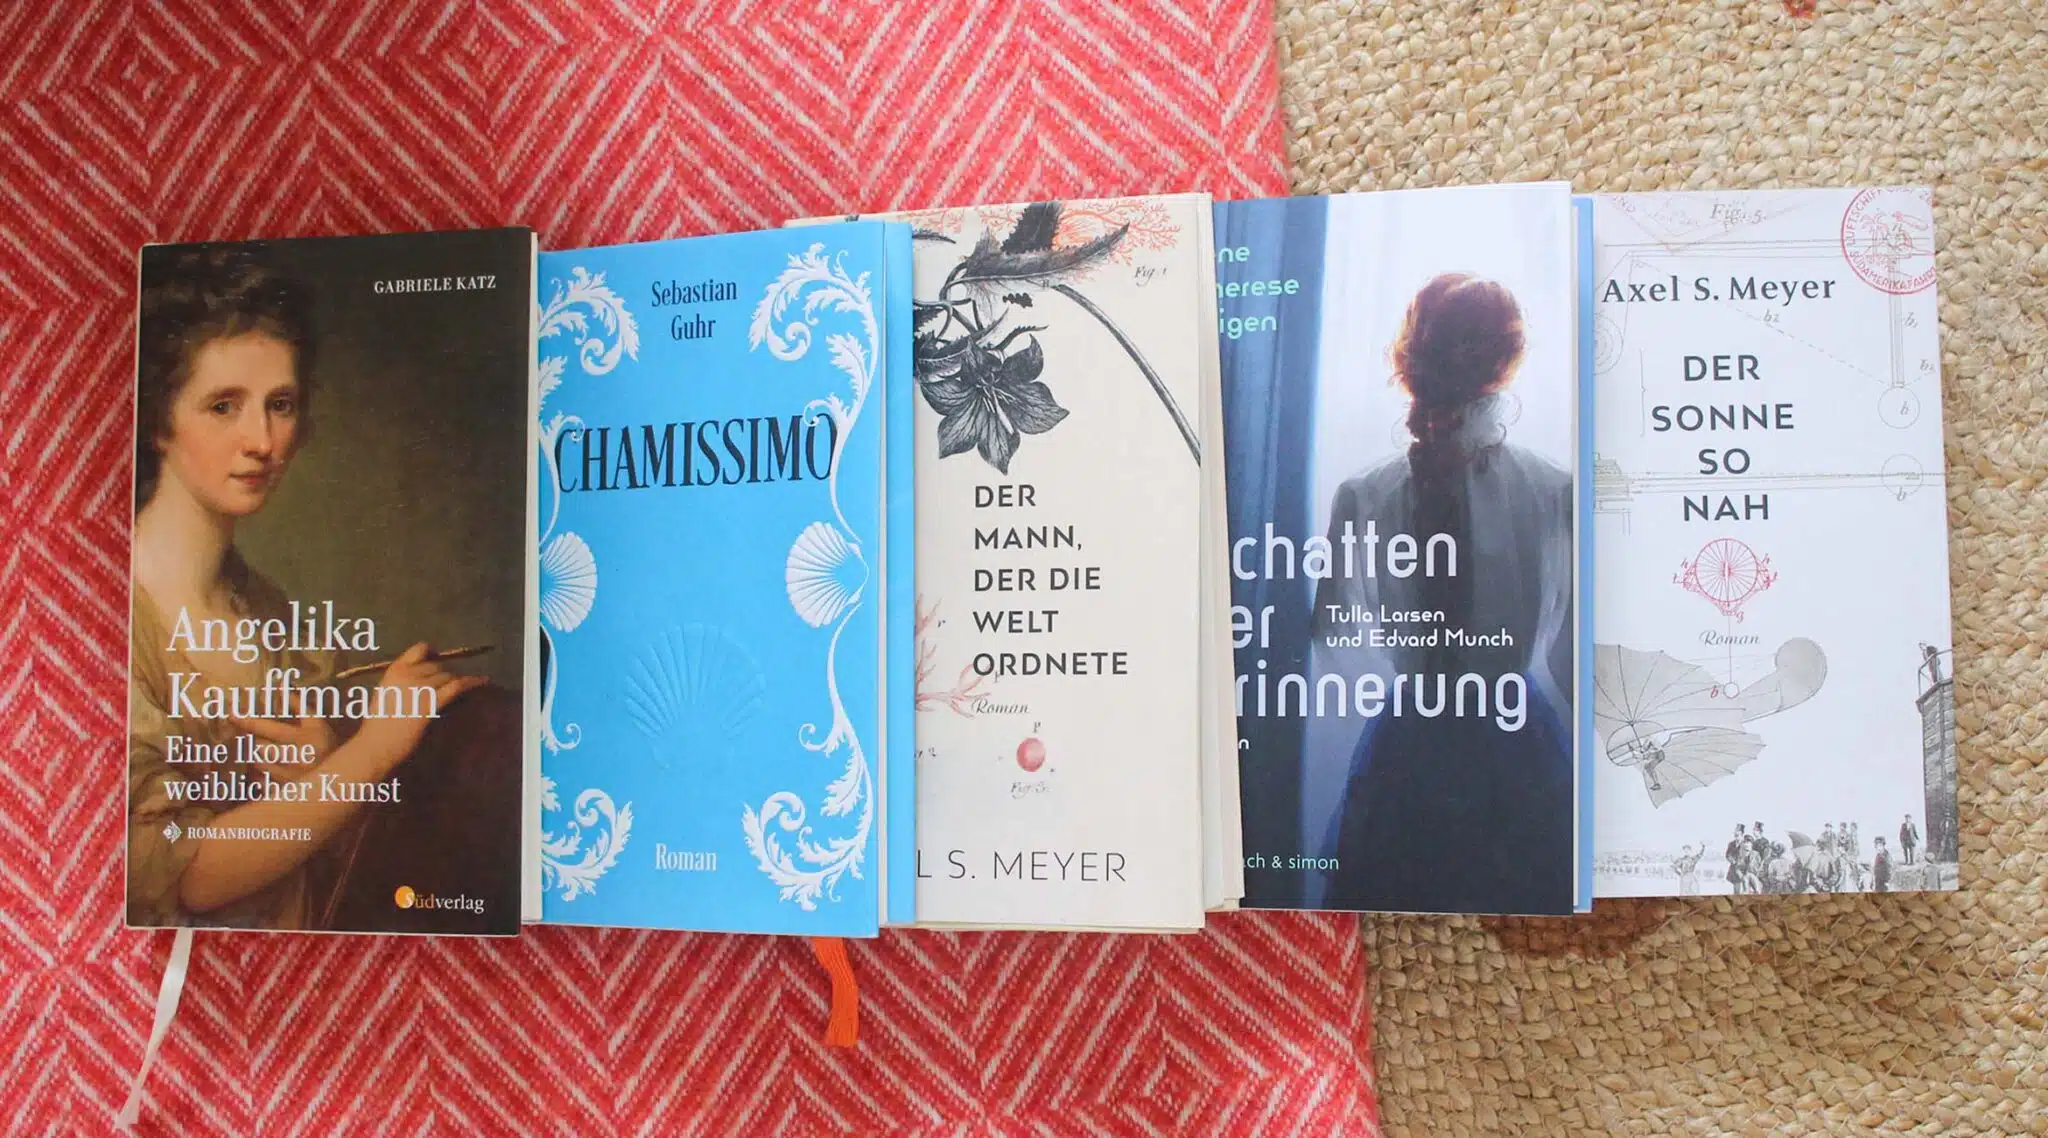 Von Chamisso bis Zeppelin – Fünf aktuelle Romanbiografien